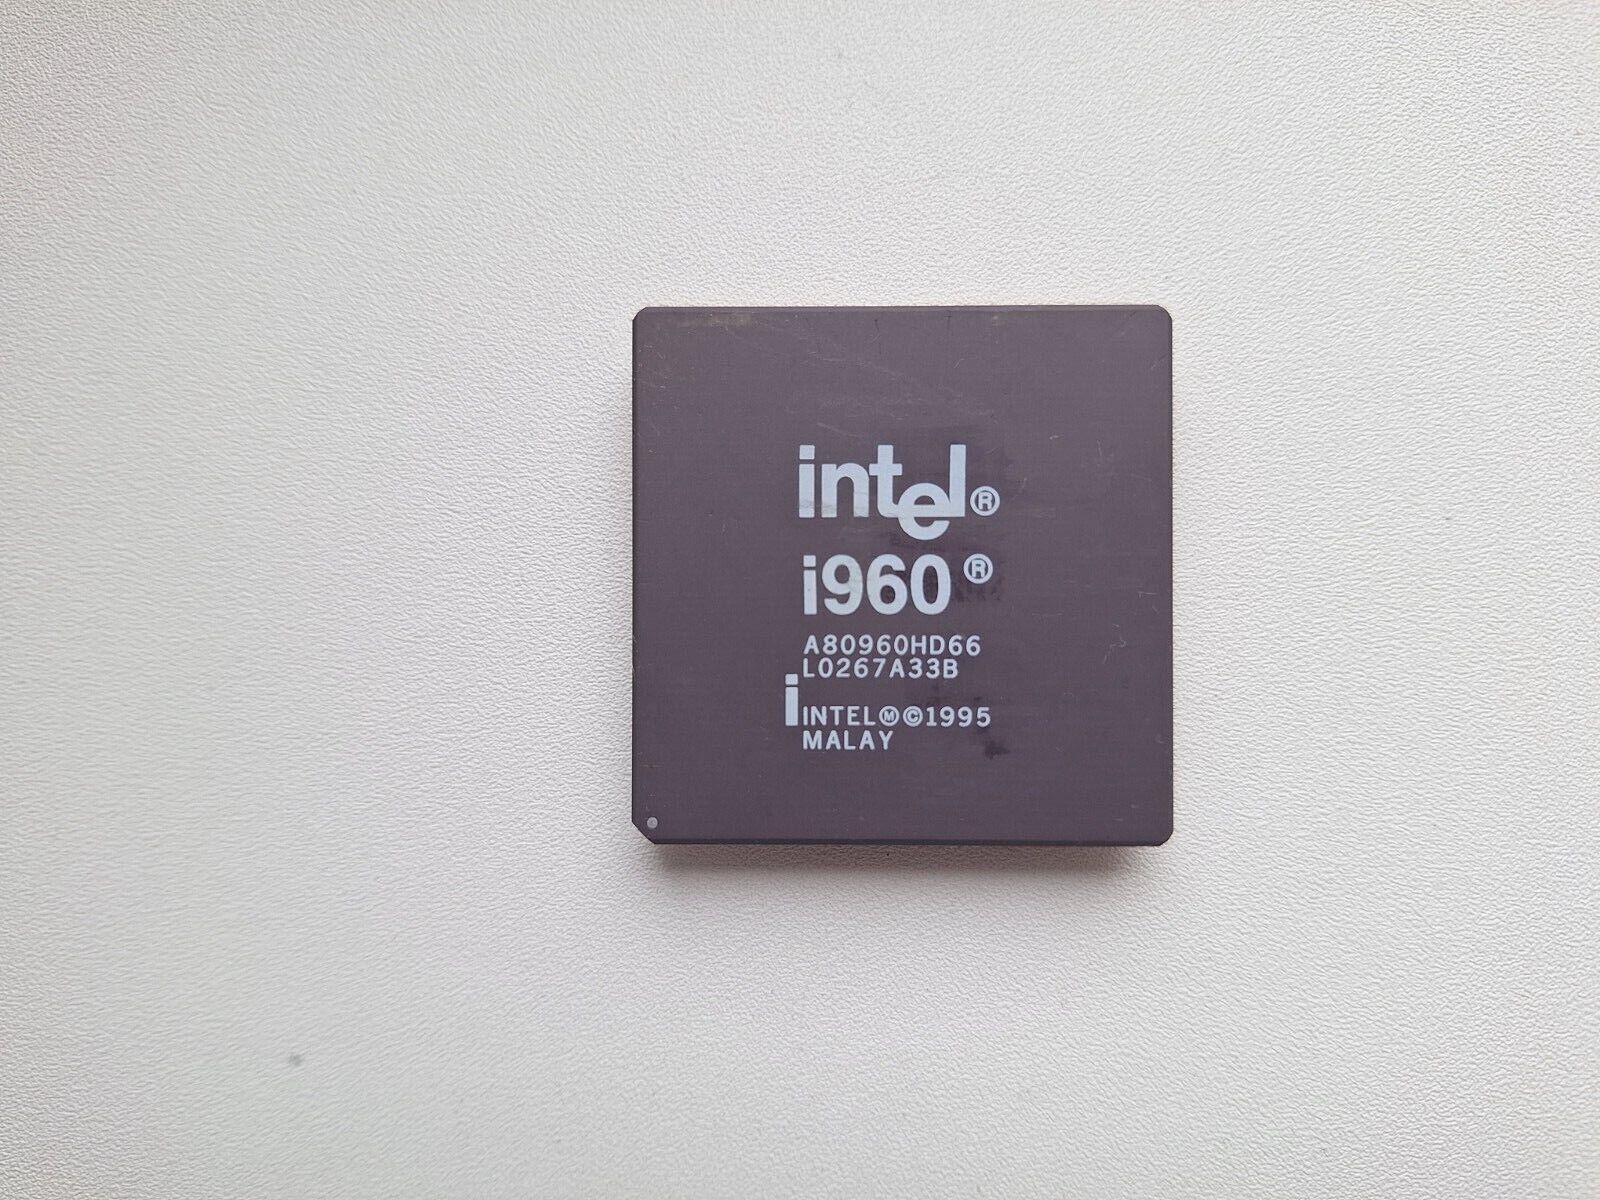 Intel A80960 I960 A80960HD66 A80960HA33 A80960CA-25 SW030 Vintage CPU, GOLD